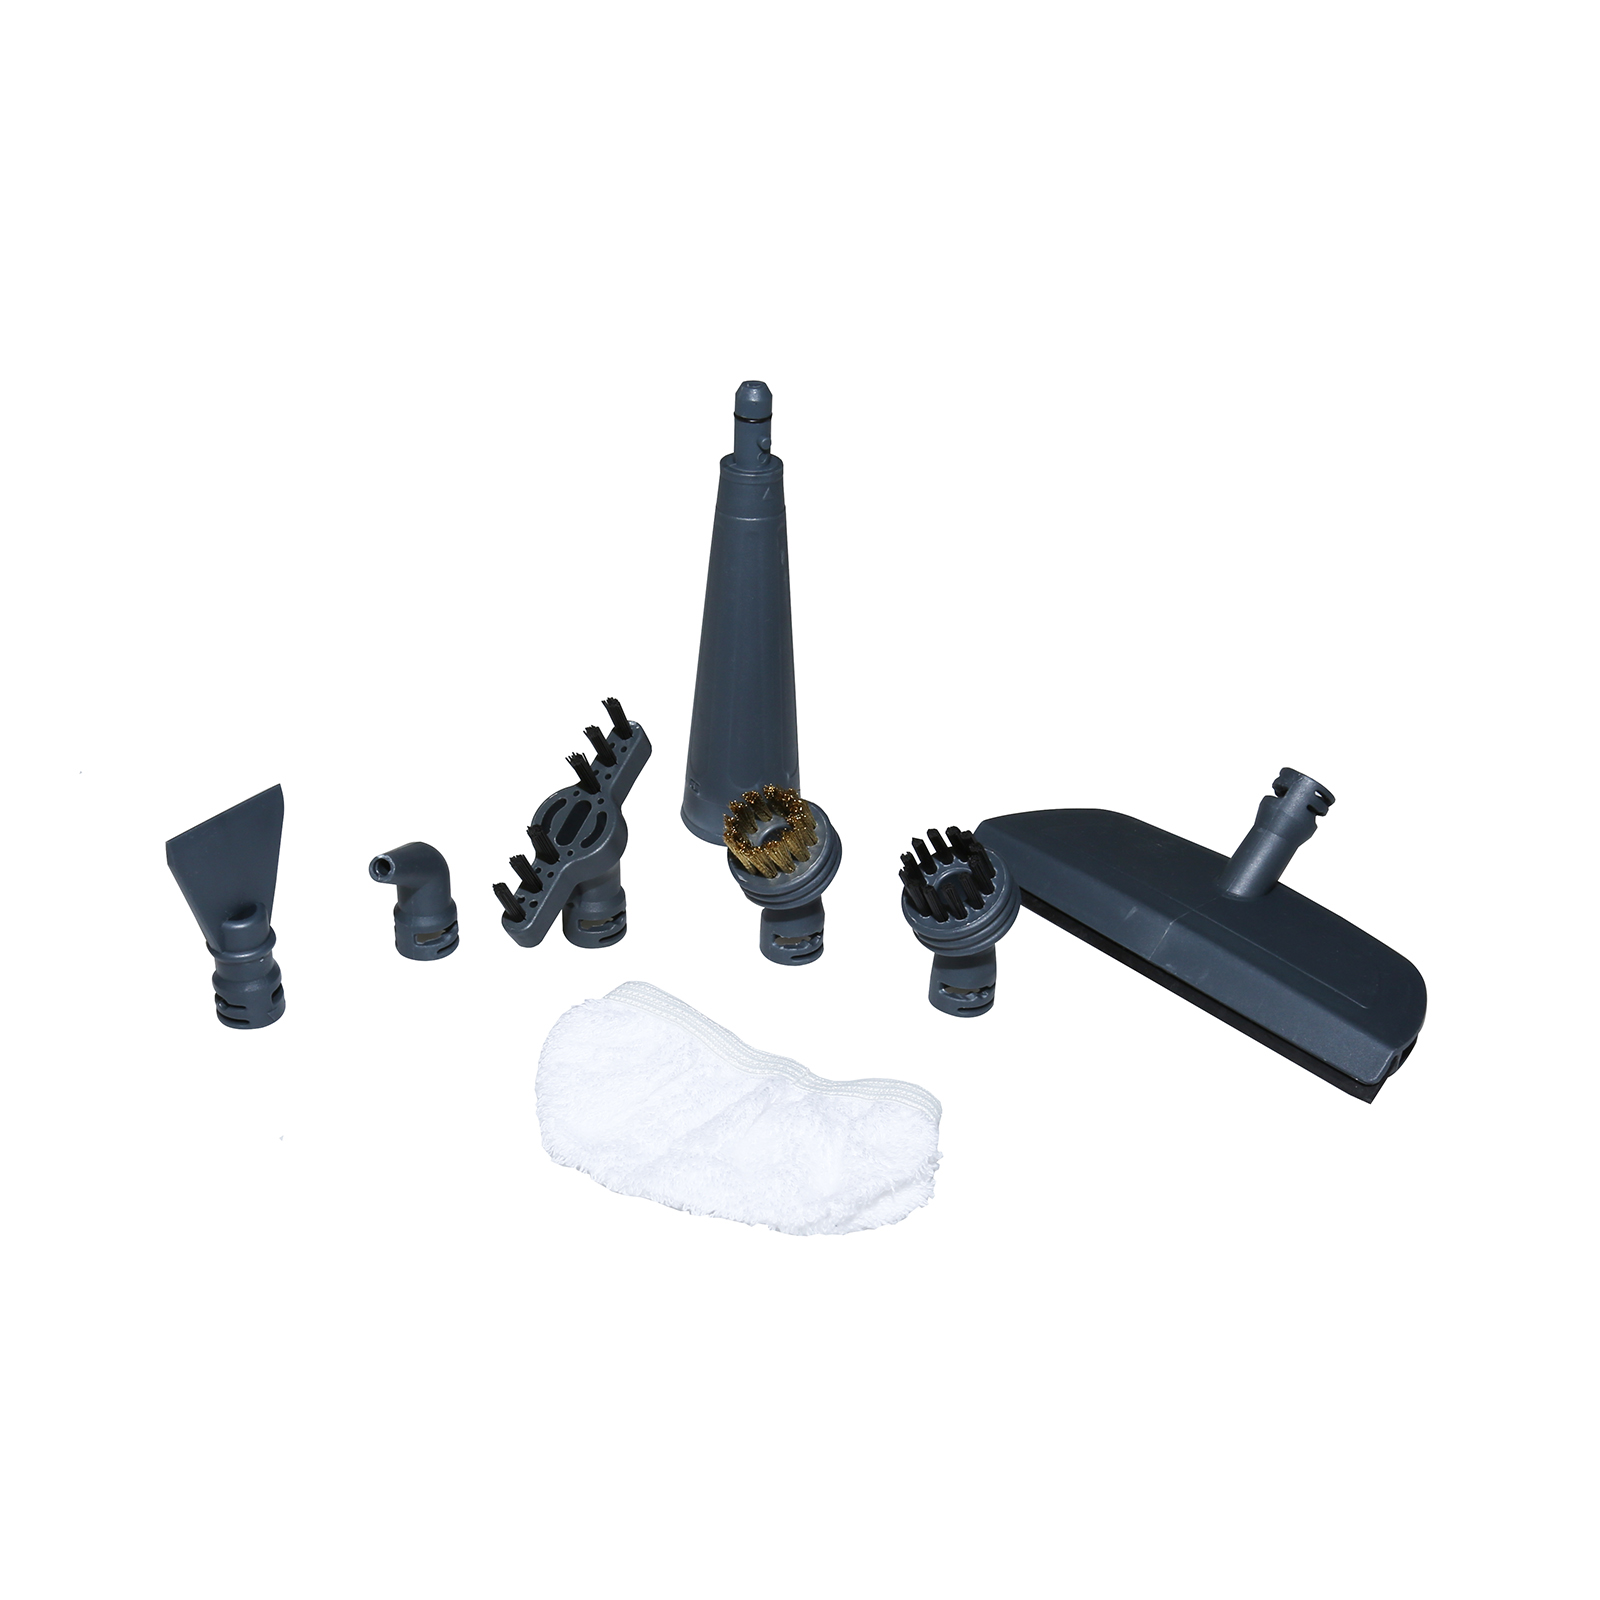 Vax Handheld Steam Cleaner Nozzle Tool Kit - S4 S5 S6 V-081 V-082 V-084 F4S046